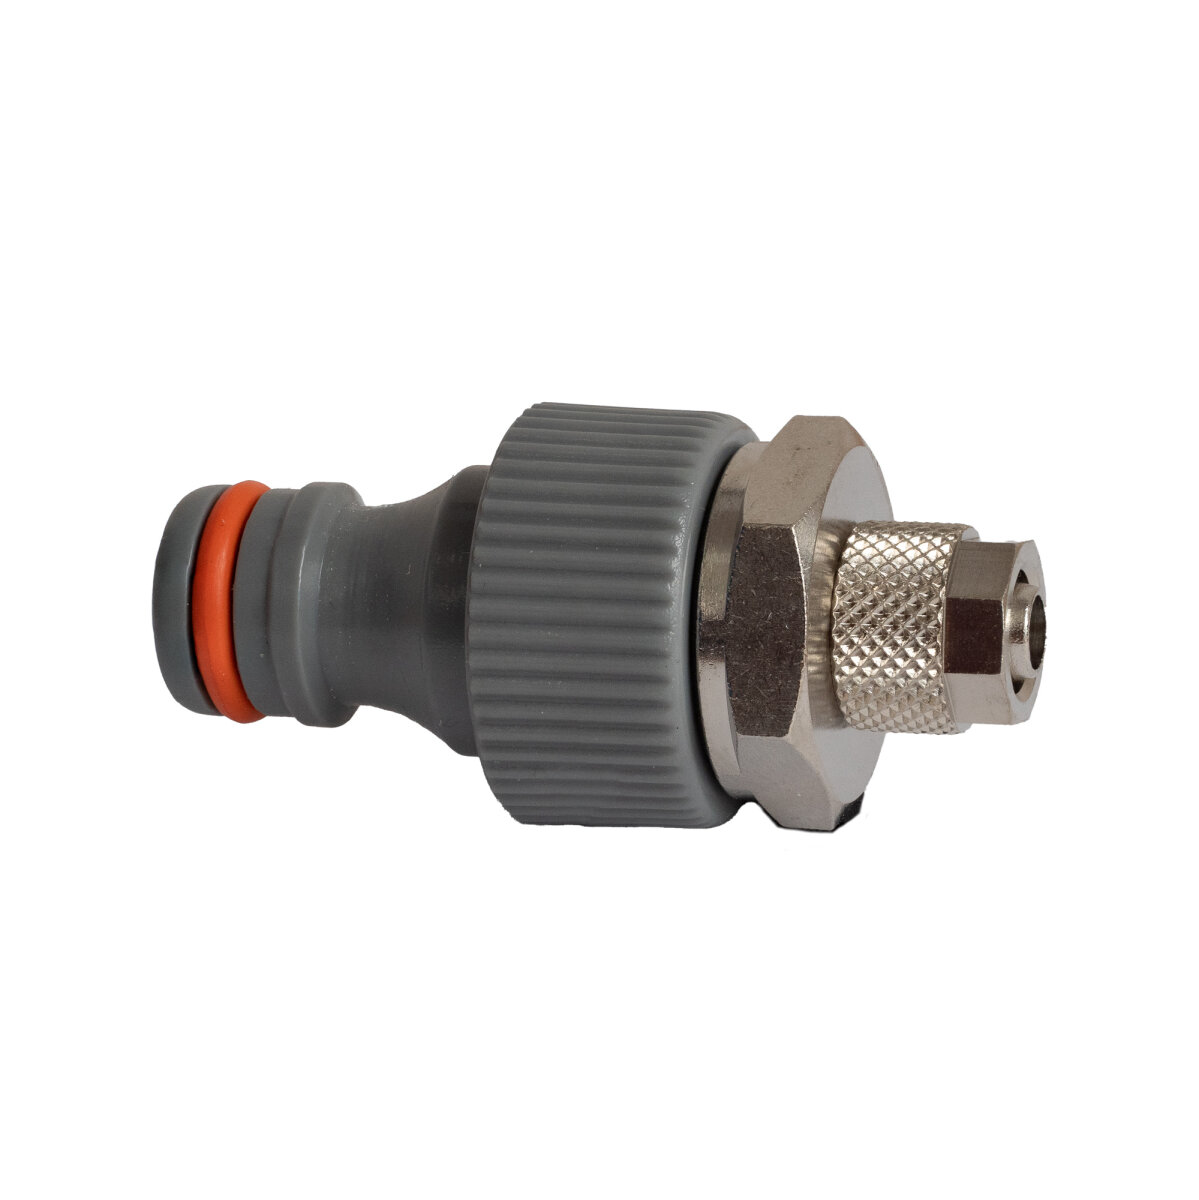 Schnellkupplung 8 mm Push-in x 8 mm Kompressionskupplung - Gas Spezialist